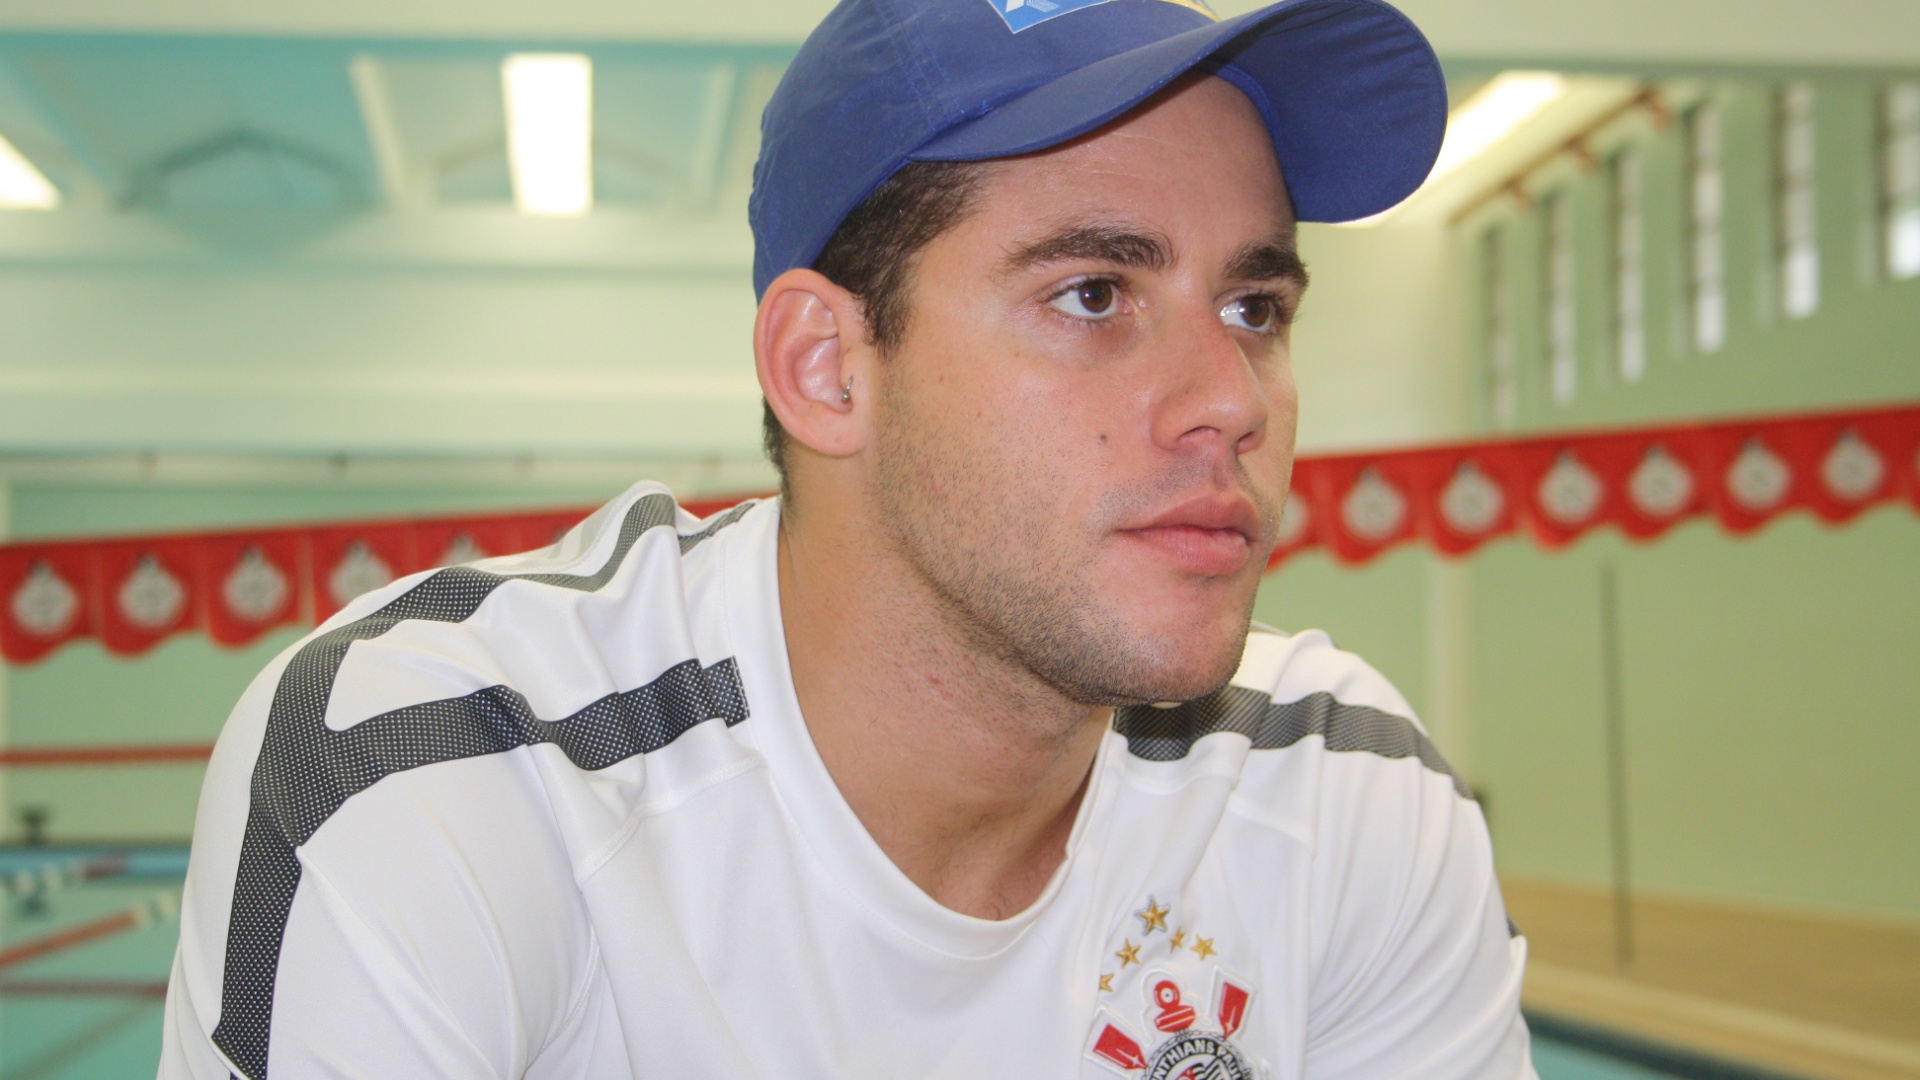 Thiago Pereira no Centro Olímpico, em São Paulo, onde treinará até Londres-2012